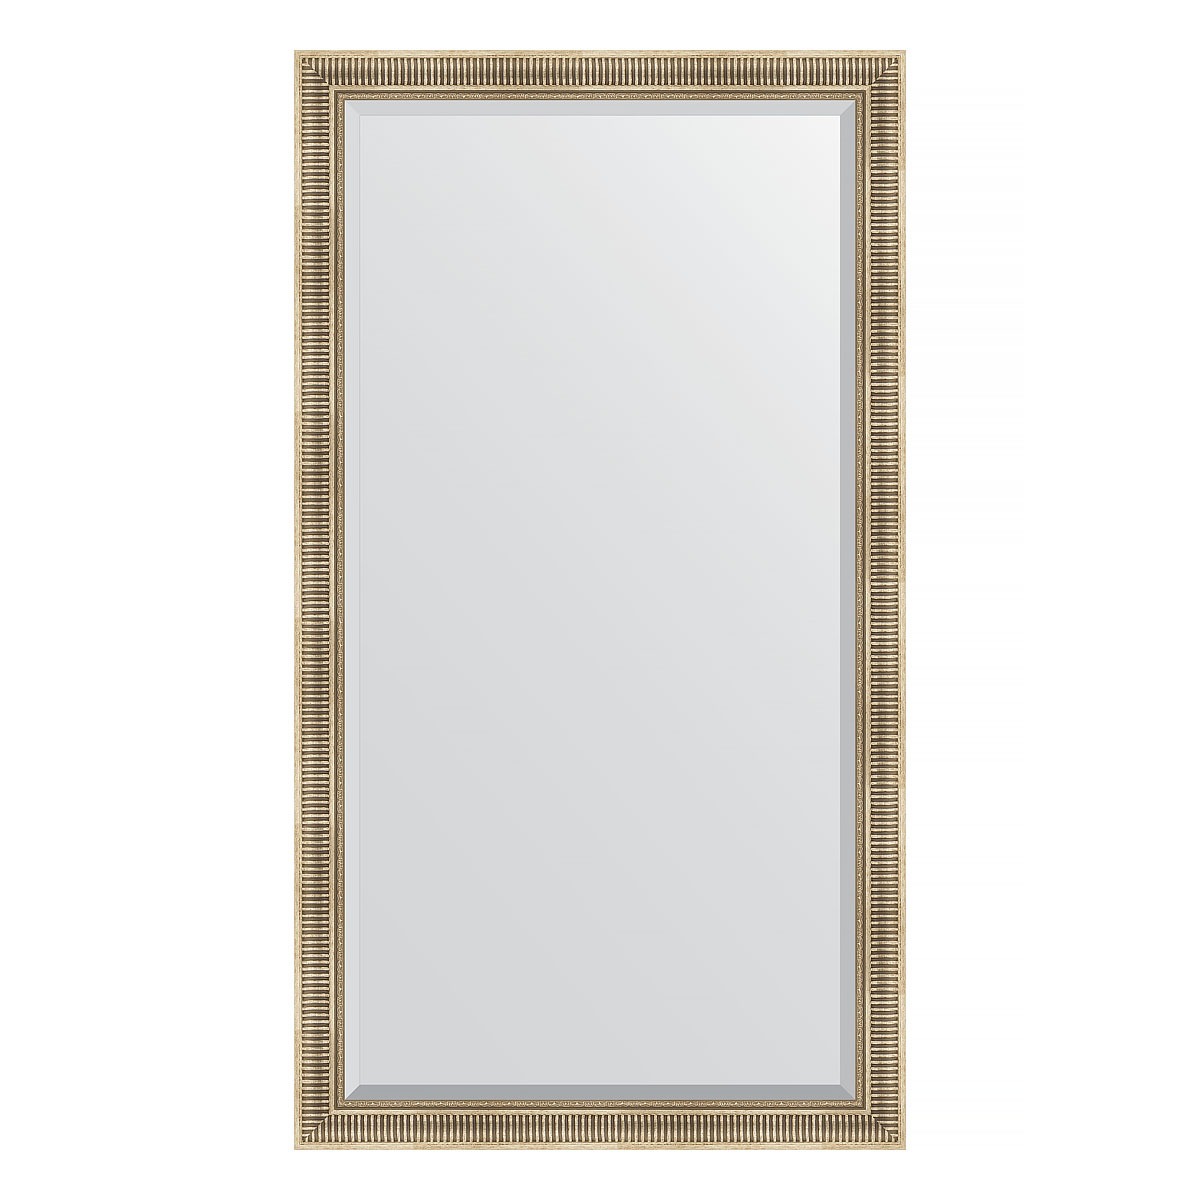 Зеркало напольное с фацетом в багетной раме Evoform серебряный акведук 93 мм 112x202 см зеркало напольное с фацетом в багетной раме бронзовый акведук 93 мм 112x202 см